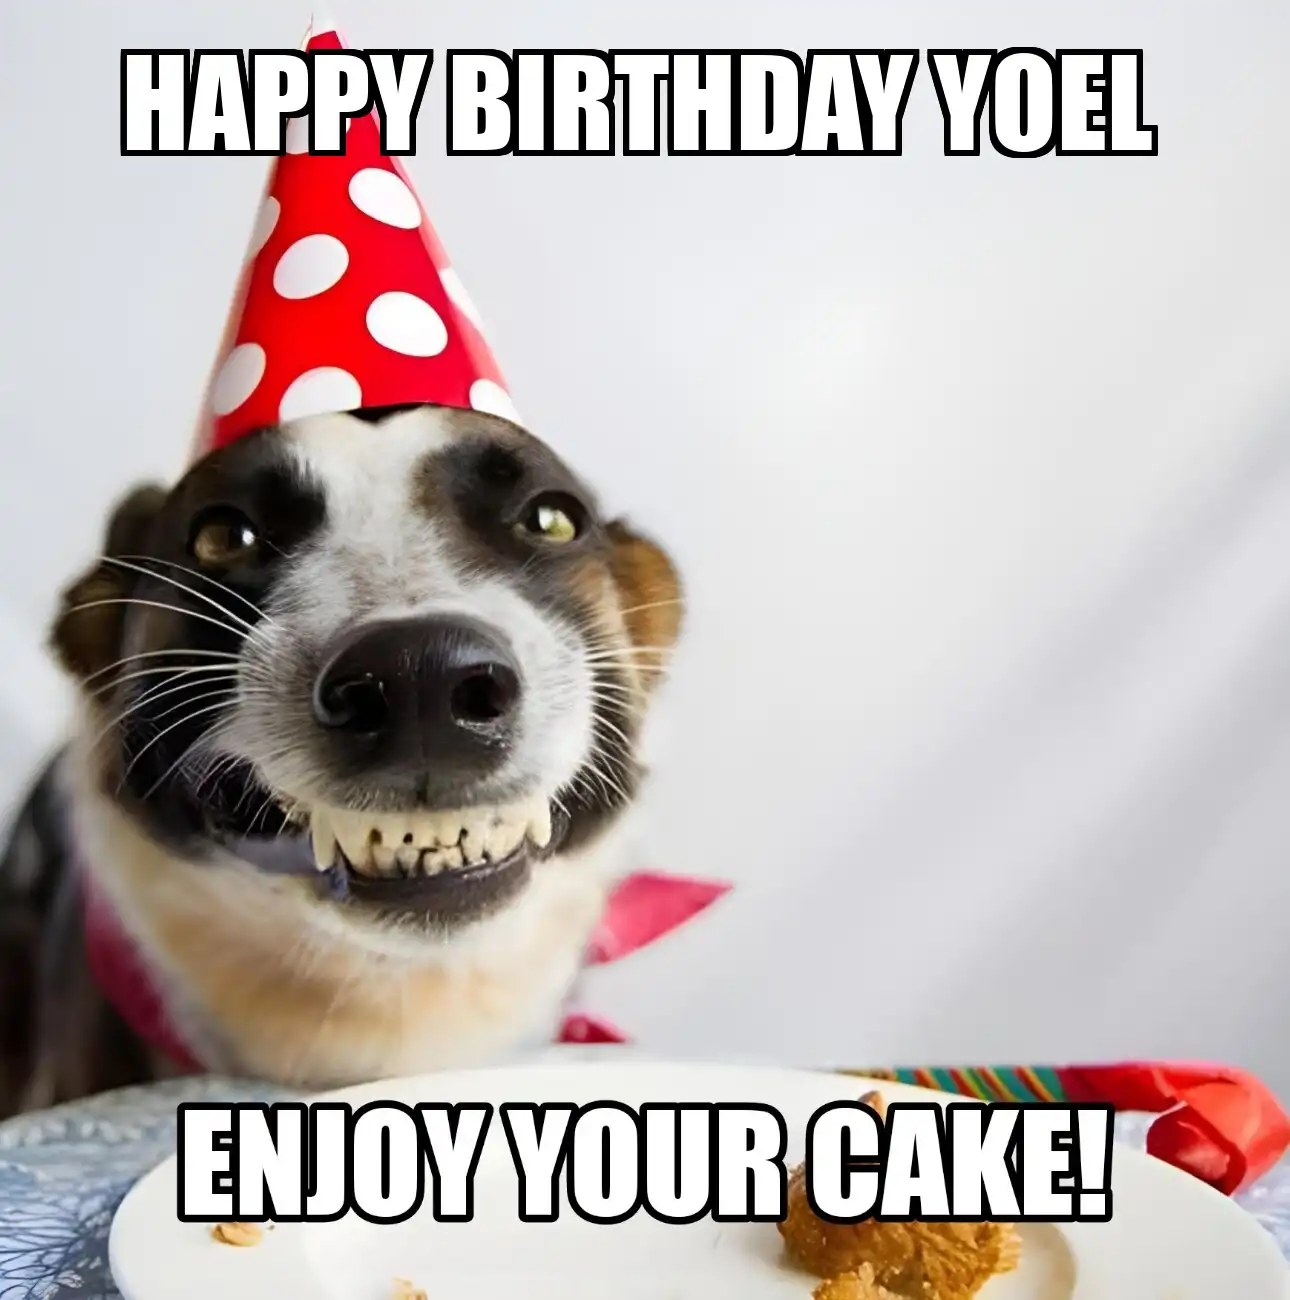 Happy Birthday Yoel Enjoy Your Cake Dog Meme